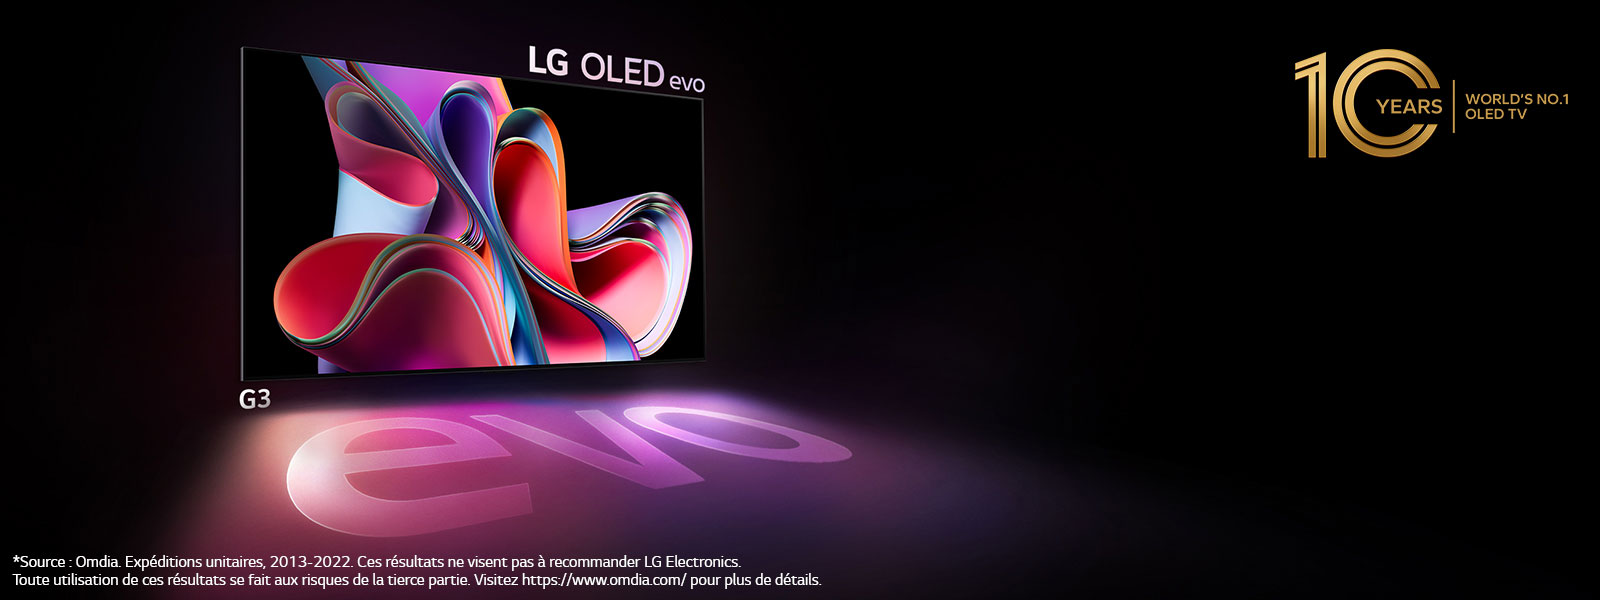 LG OLED G3 TV bersinar di ruang gelap. Di kanan atas, sebuah logo mengenang peringatan 10 tahun OLED